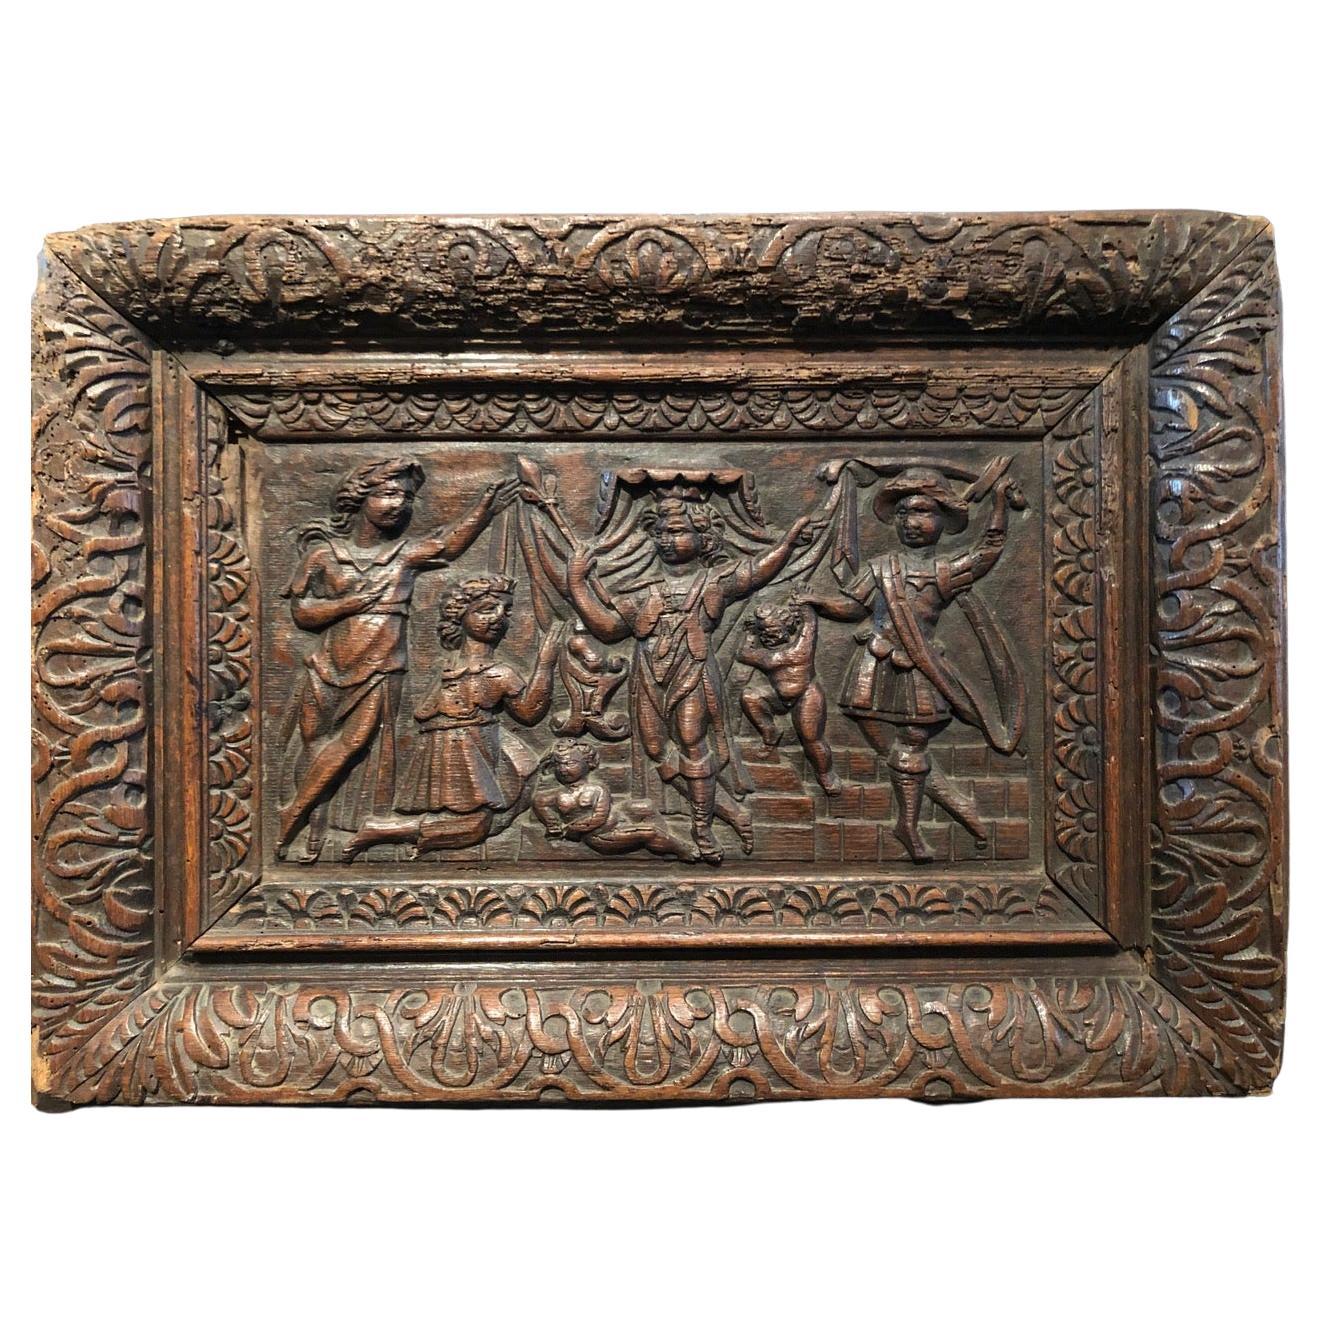 Le massacre des innocents
Panneau en chêne sculpté
Normandie, fin du XVIe siècle
(Étiquettes de collection au dos)
Dimensions : 43,5 x 61 cm : 43,5 x 61 cm.
 